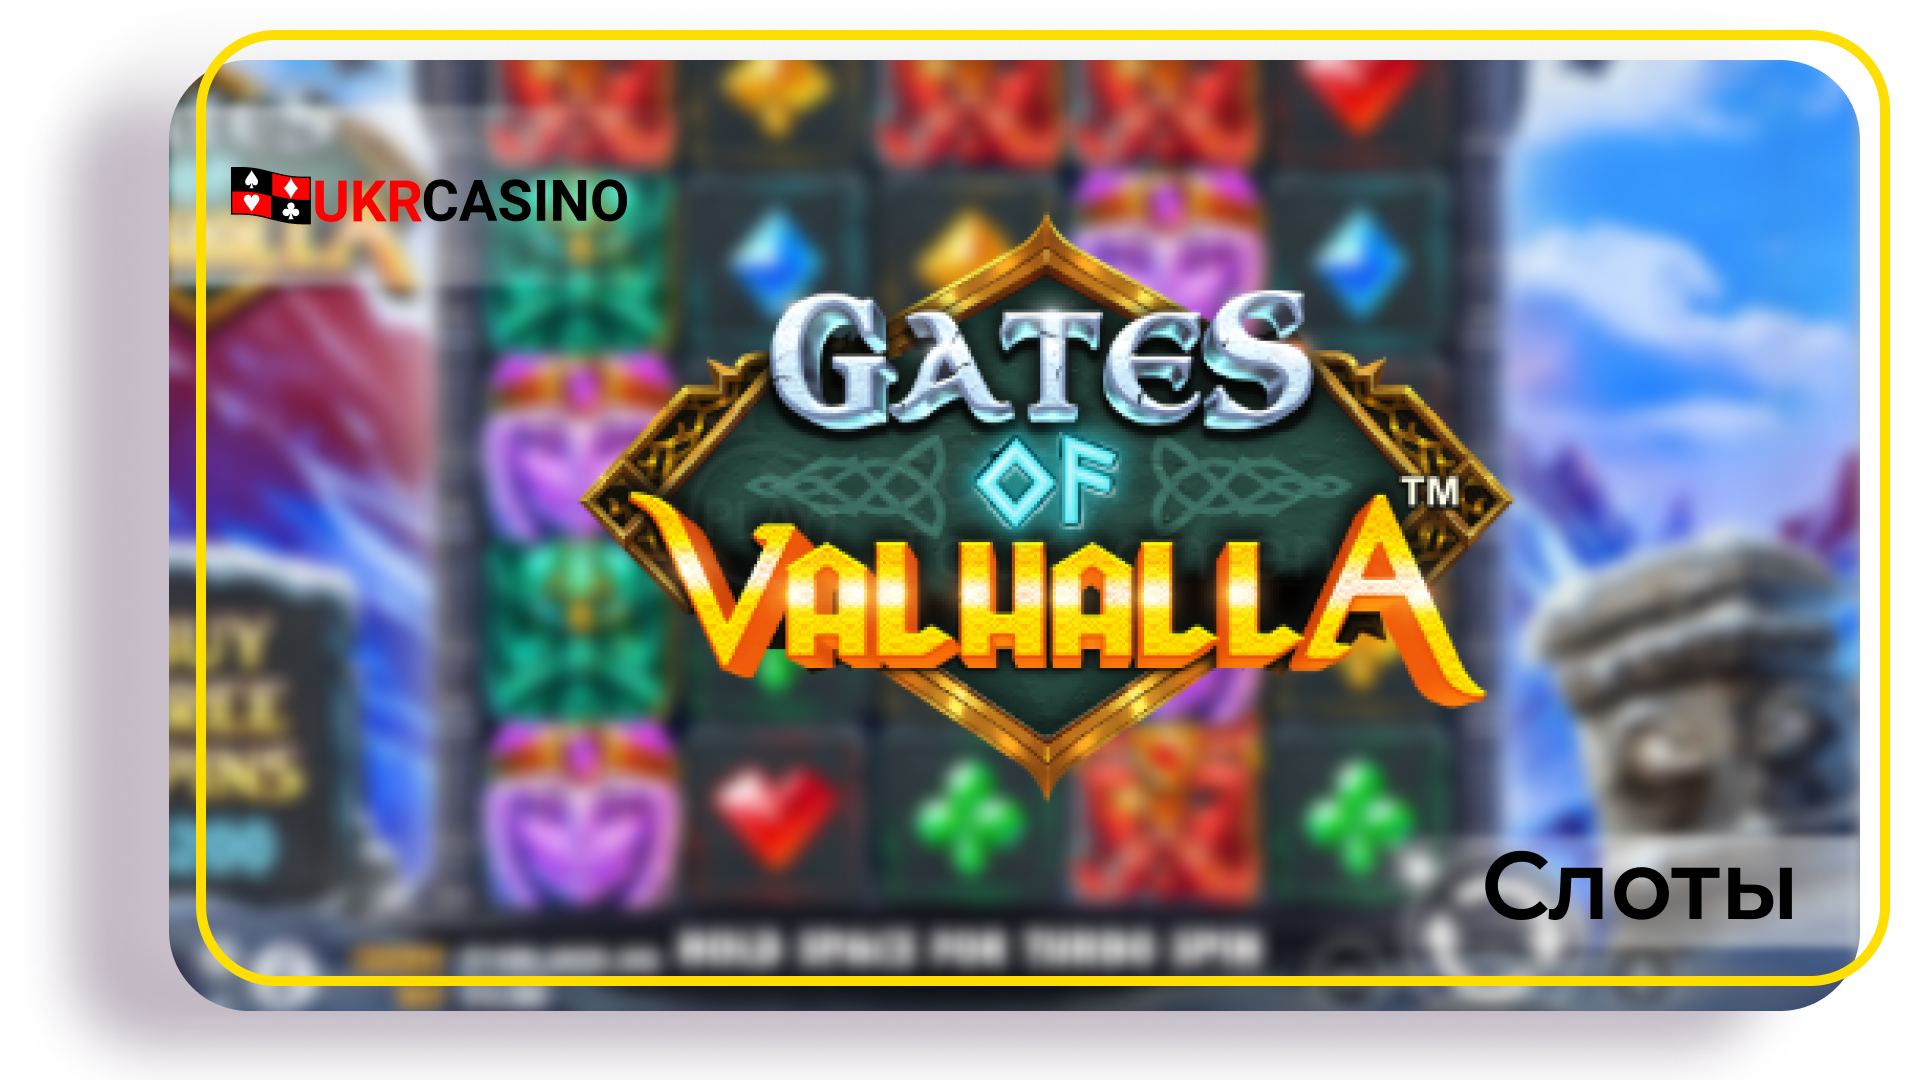 Gates of Valhalla - Pragmatic Play